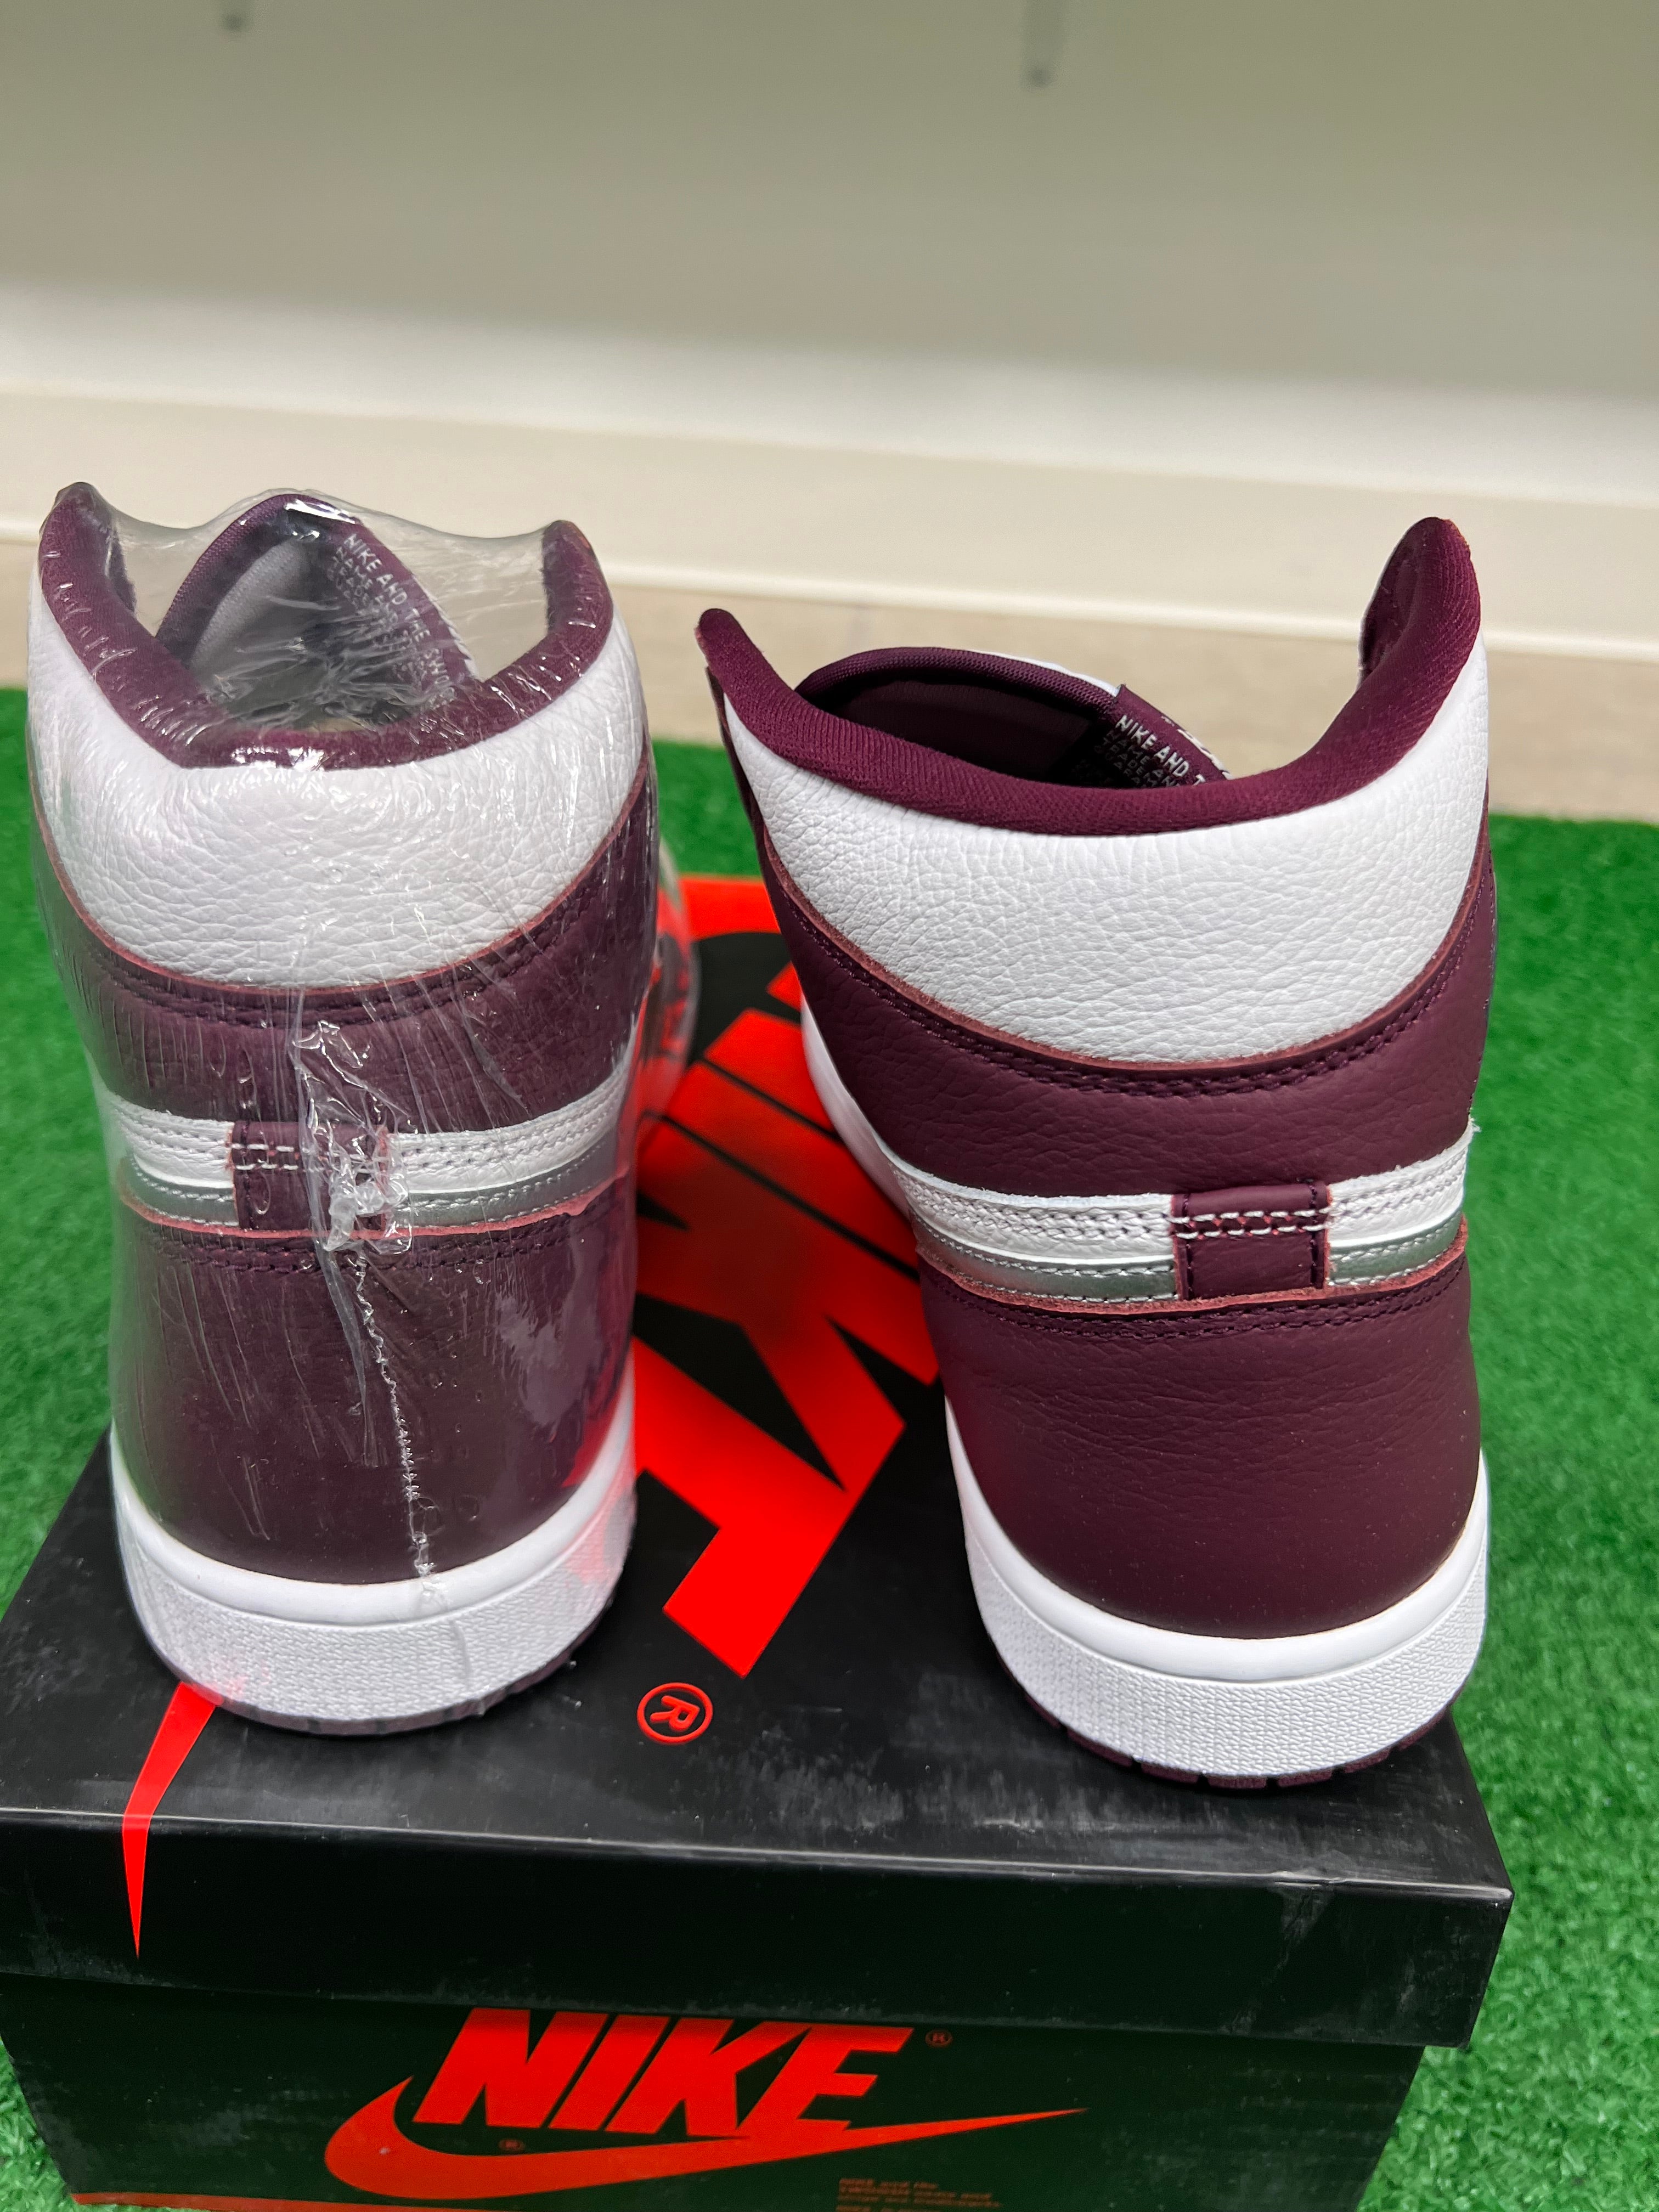 Air Jordan 1 Bordeaux men’s shoe